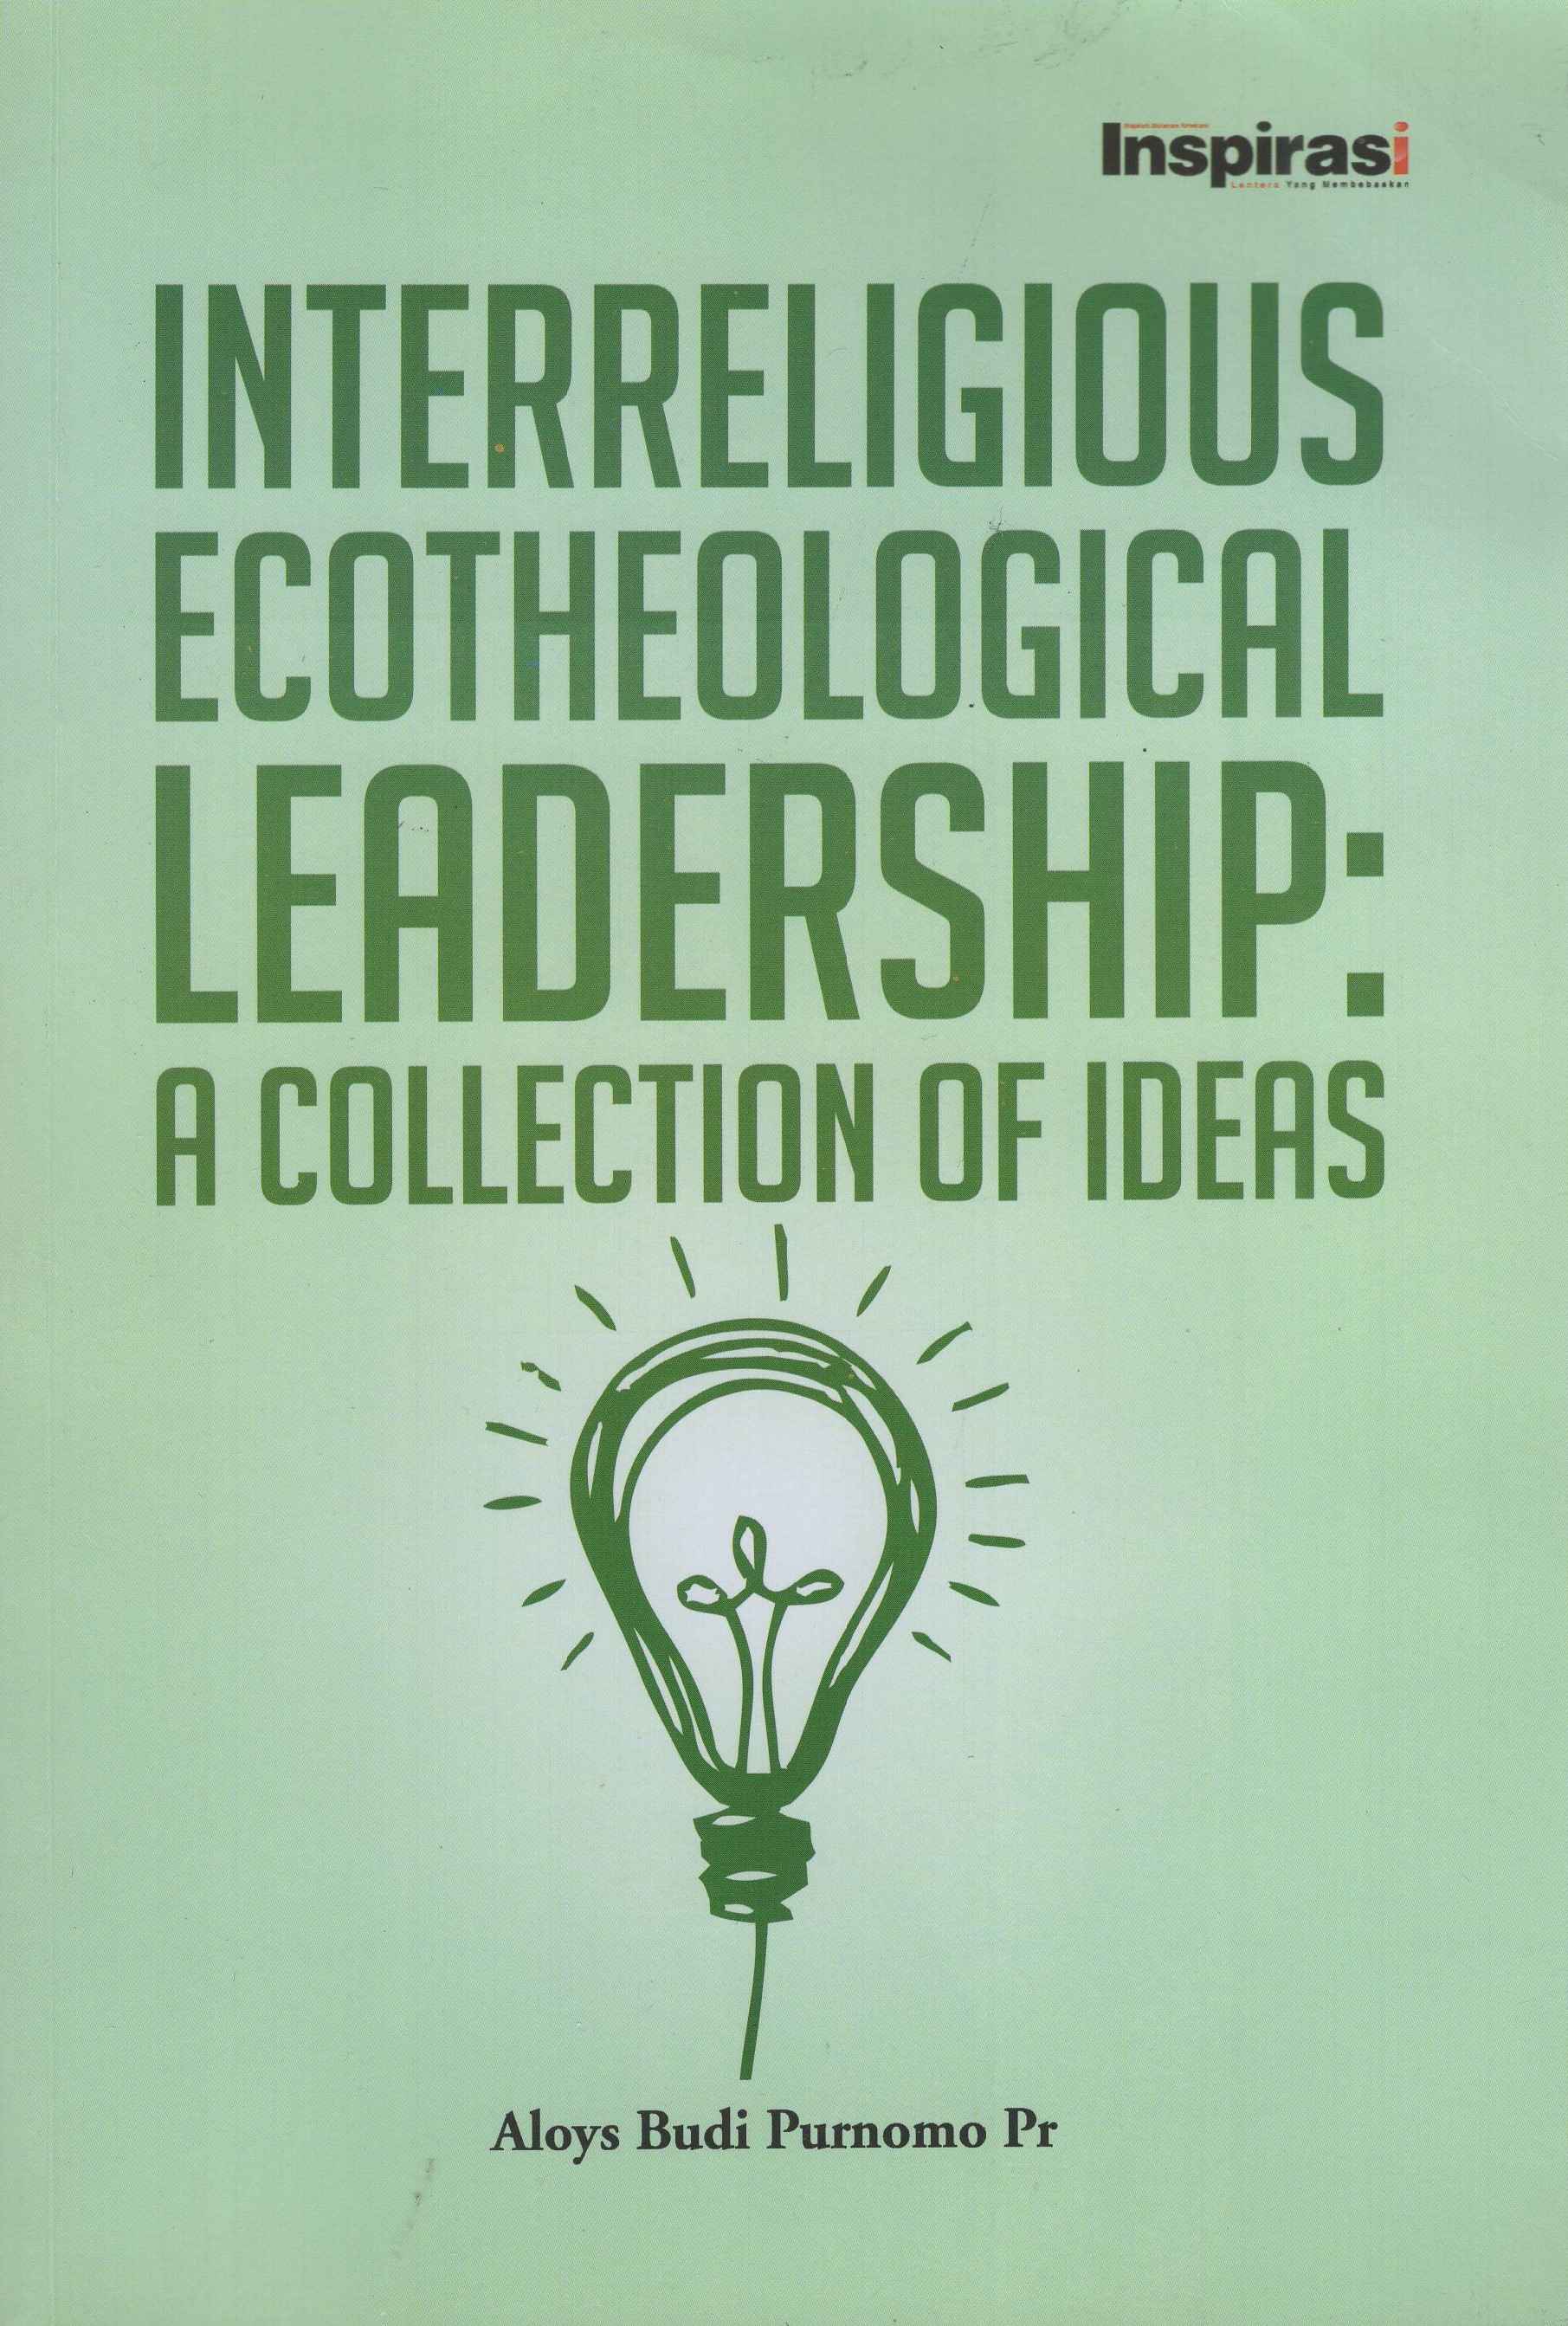 Interreligious Ecotheological Leadership : A Collection of Ideas